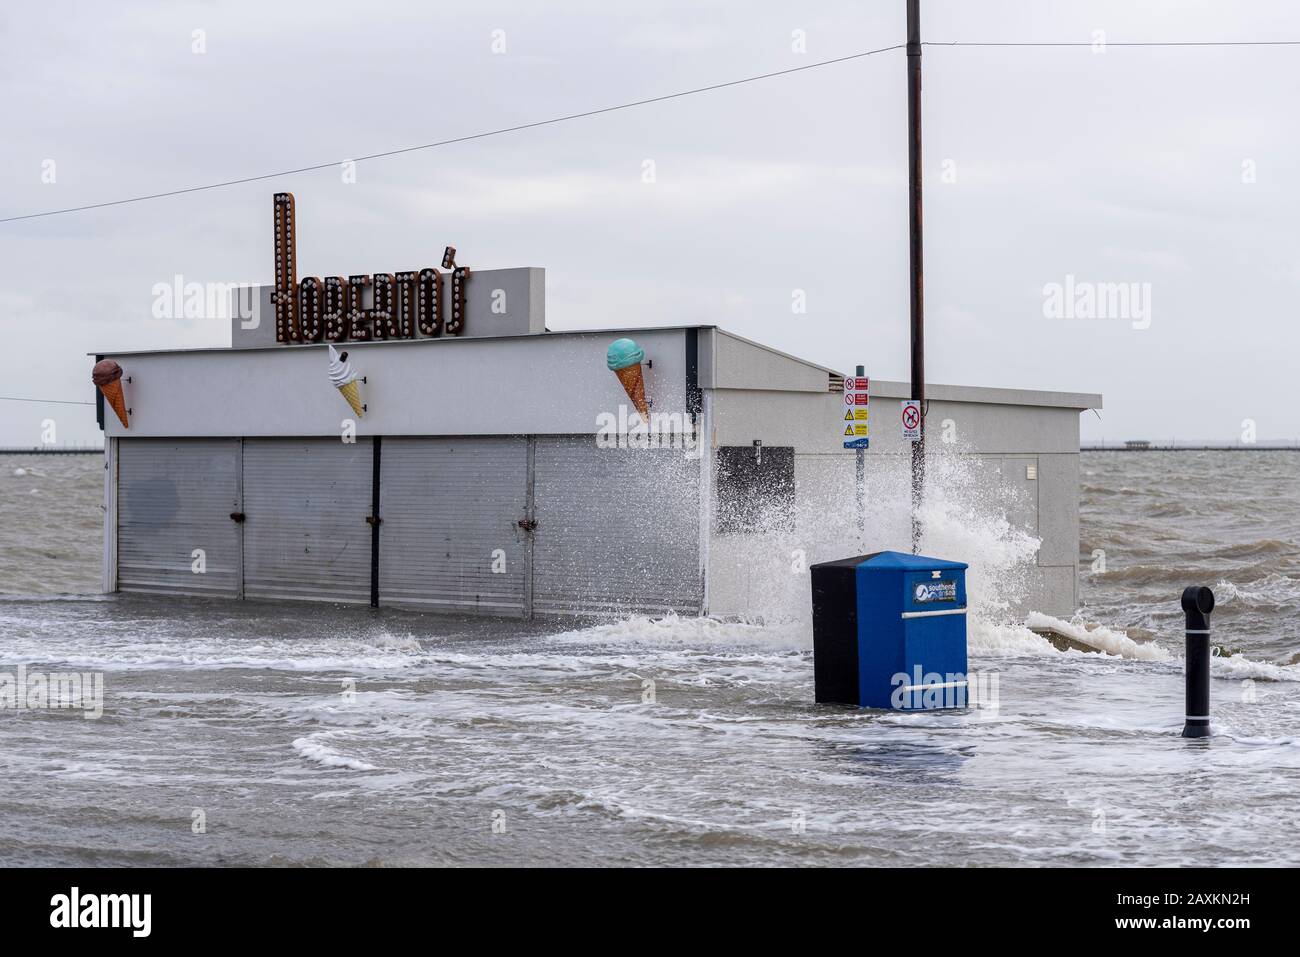 Roberto's Geschäfte am Meer sind von Überschwemmungen während der Flut Sturmflut nach Storm Ciara in Southend on Sea, Essex, Großbritannien, durchflutet. Überfüllt Stockfoto